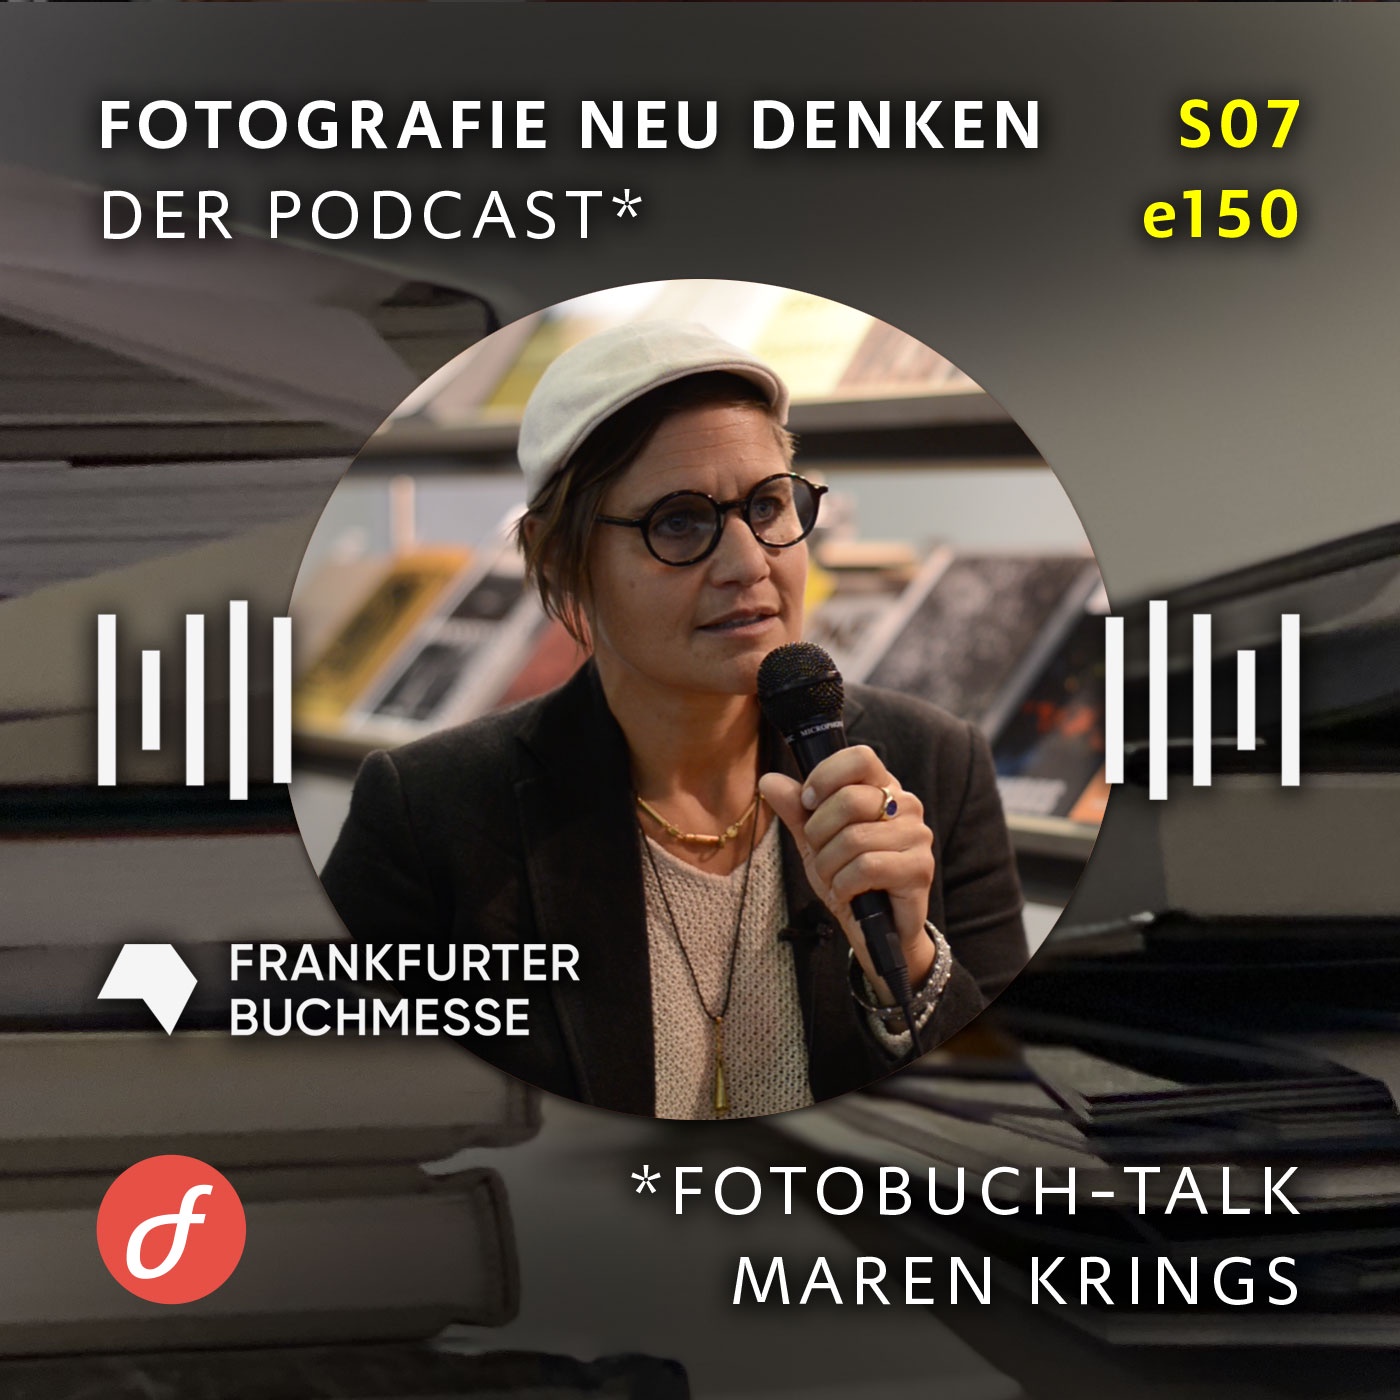 e150 »Fotobuch-Talk mit Maren Krings. Thema Nachhaltigkeit. Frankfurter Buchmesse.«